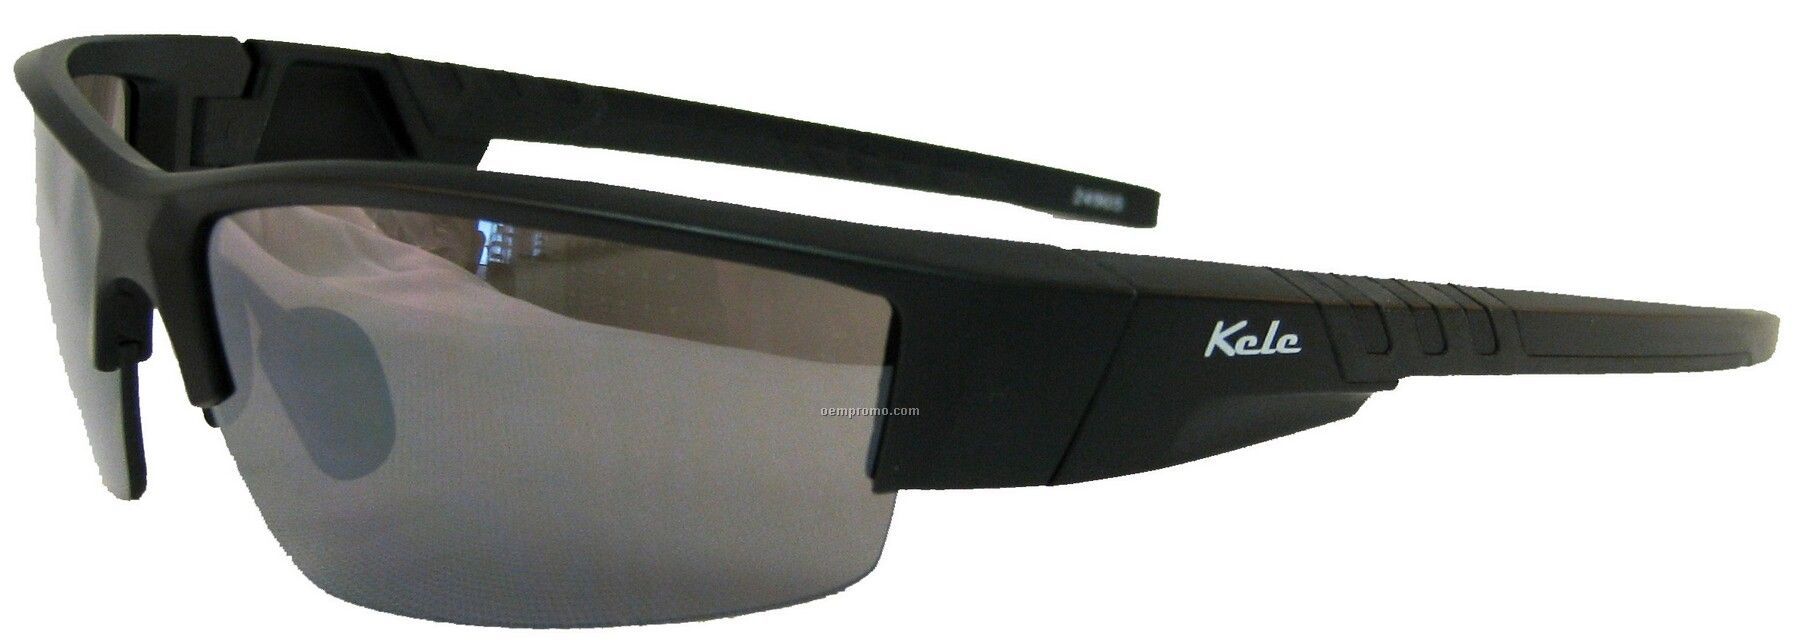 Lunette Sunglasses - Gray Lens W/Matte Black Frame